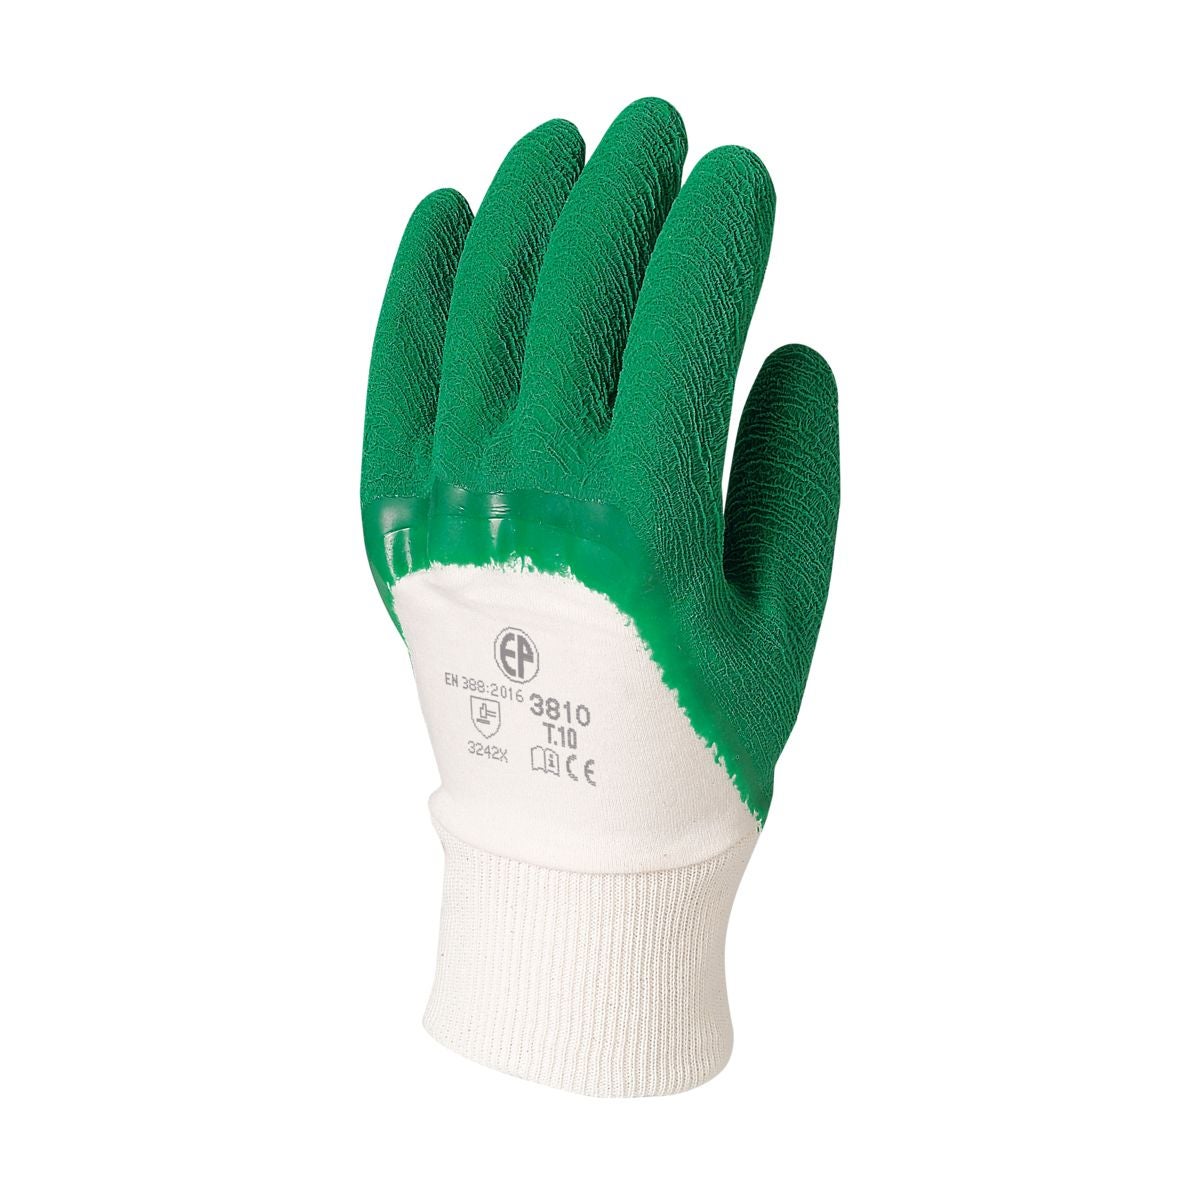 Gants latex crépé vert qualité supérieure - COVERGUARD - Taille XL